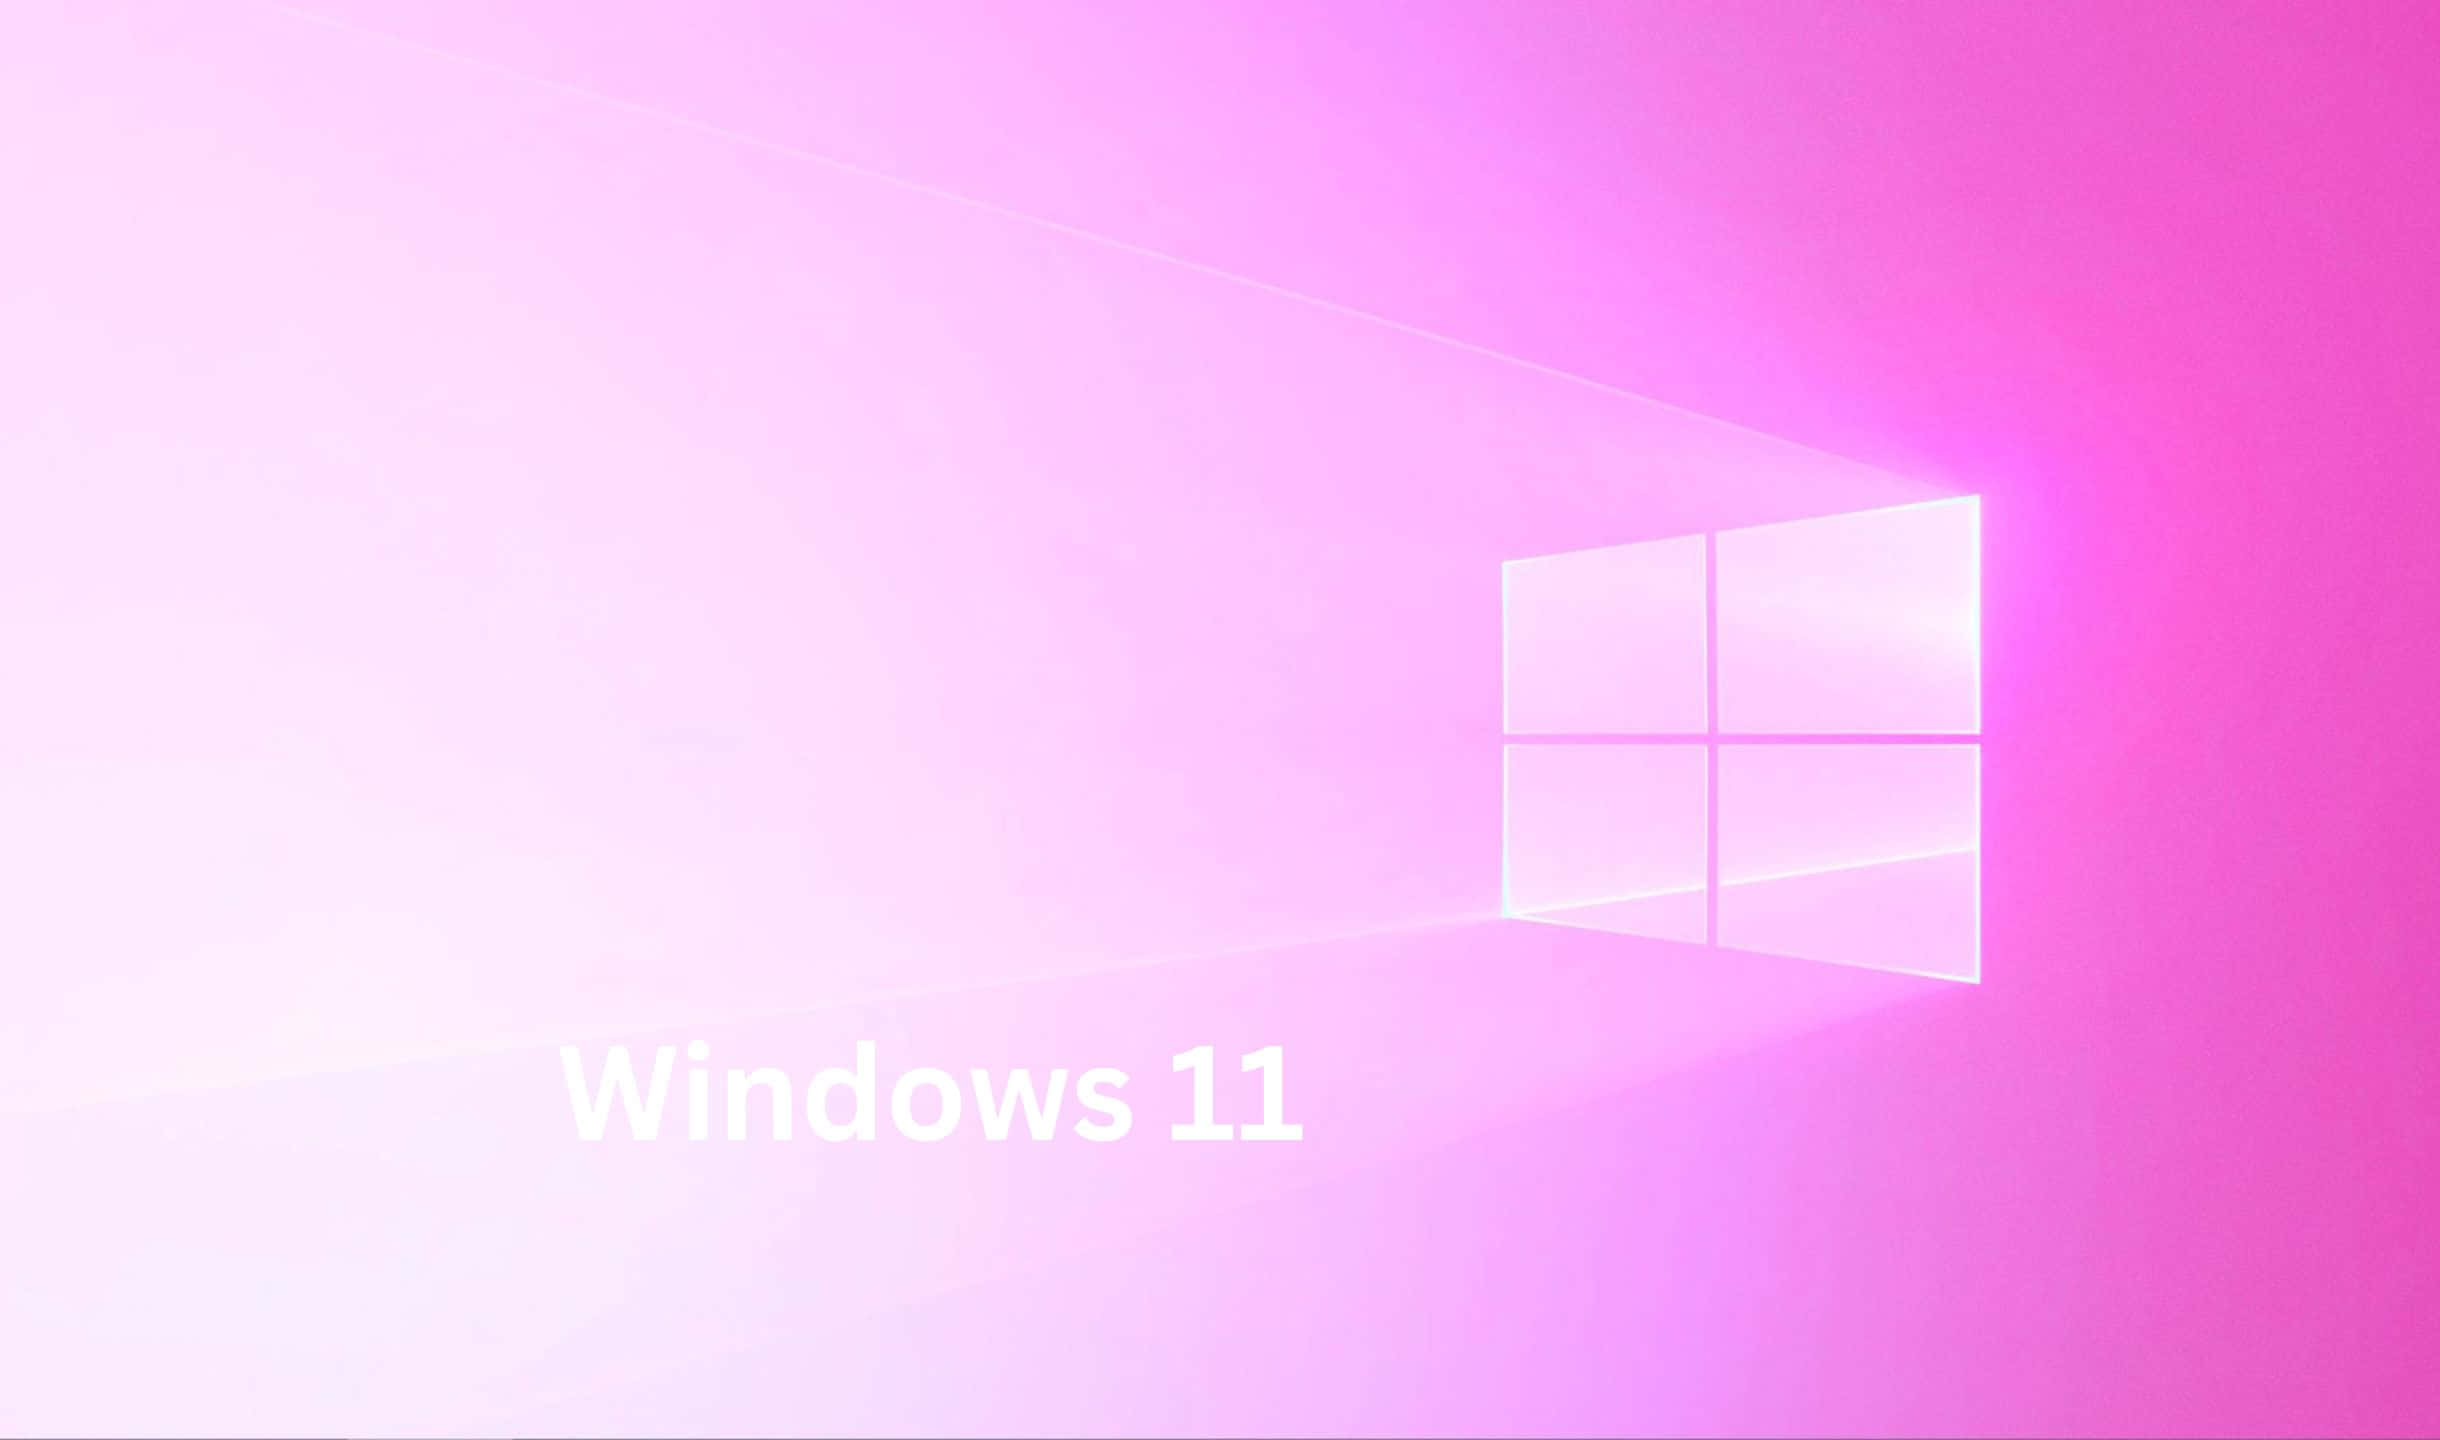 Værklar Til Fremtiden - Velkommen Til Windows 11